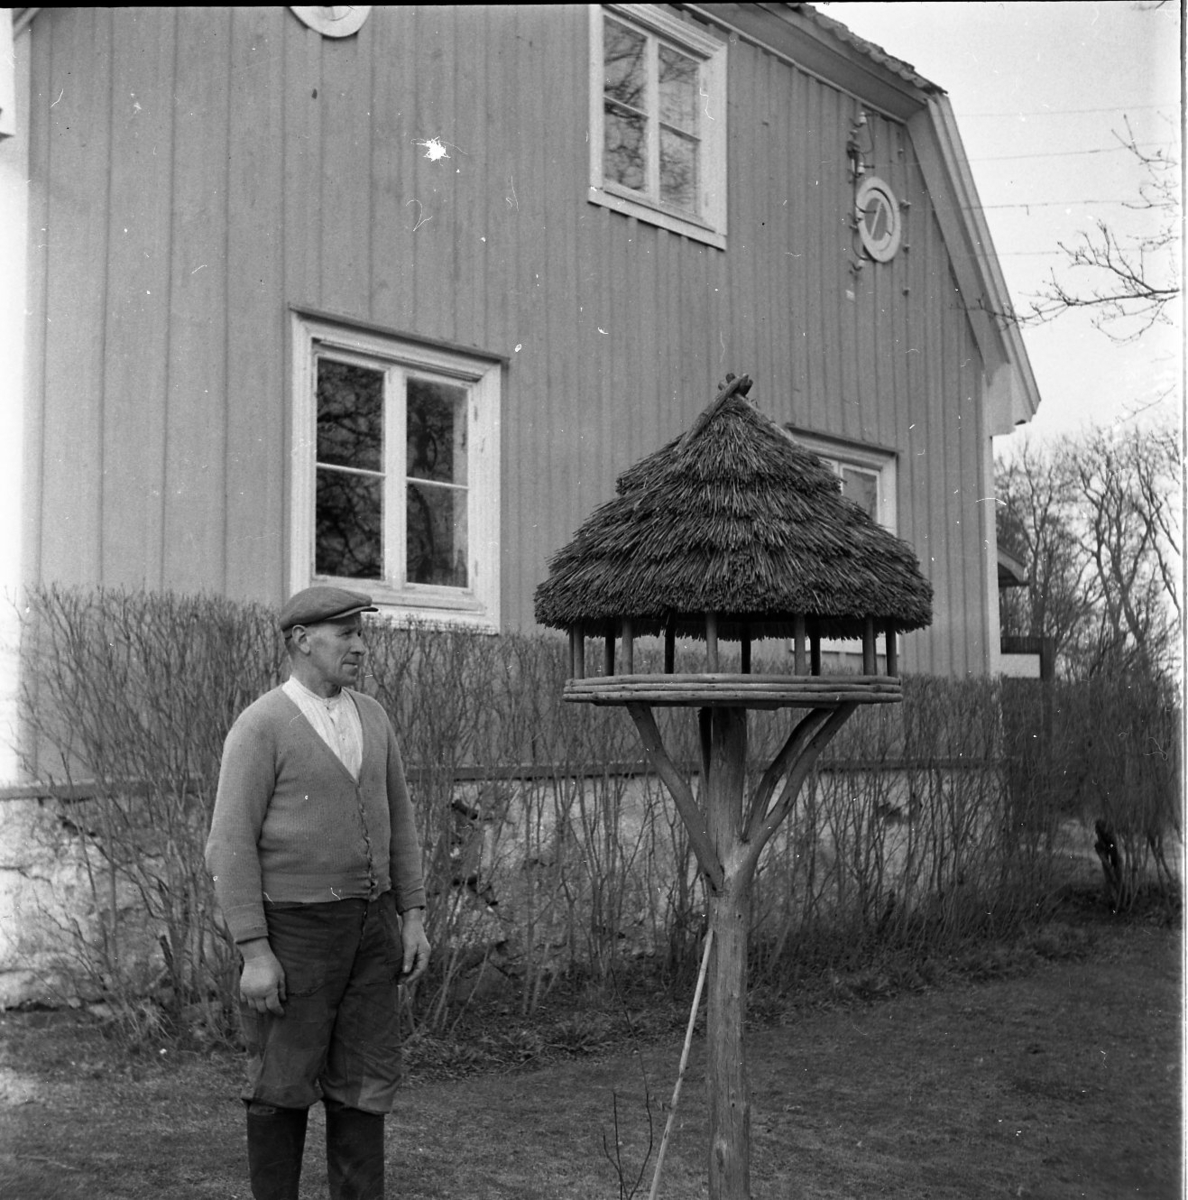 Porträtt av Algot Wallin utanför sitt hus. Han står bredvid en fågelmatare med ett flätat tak.